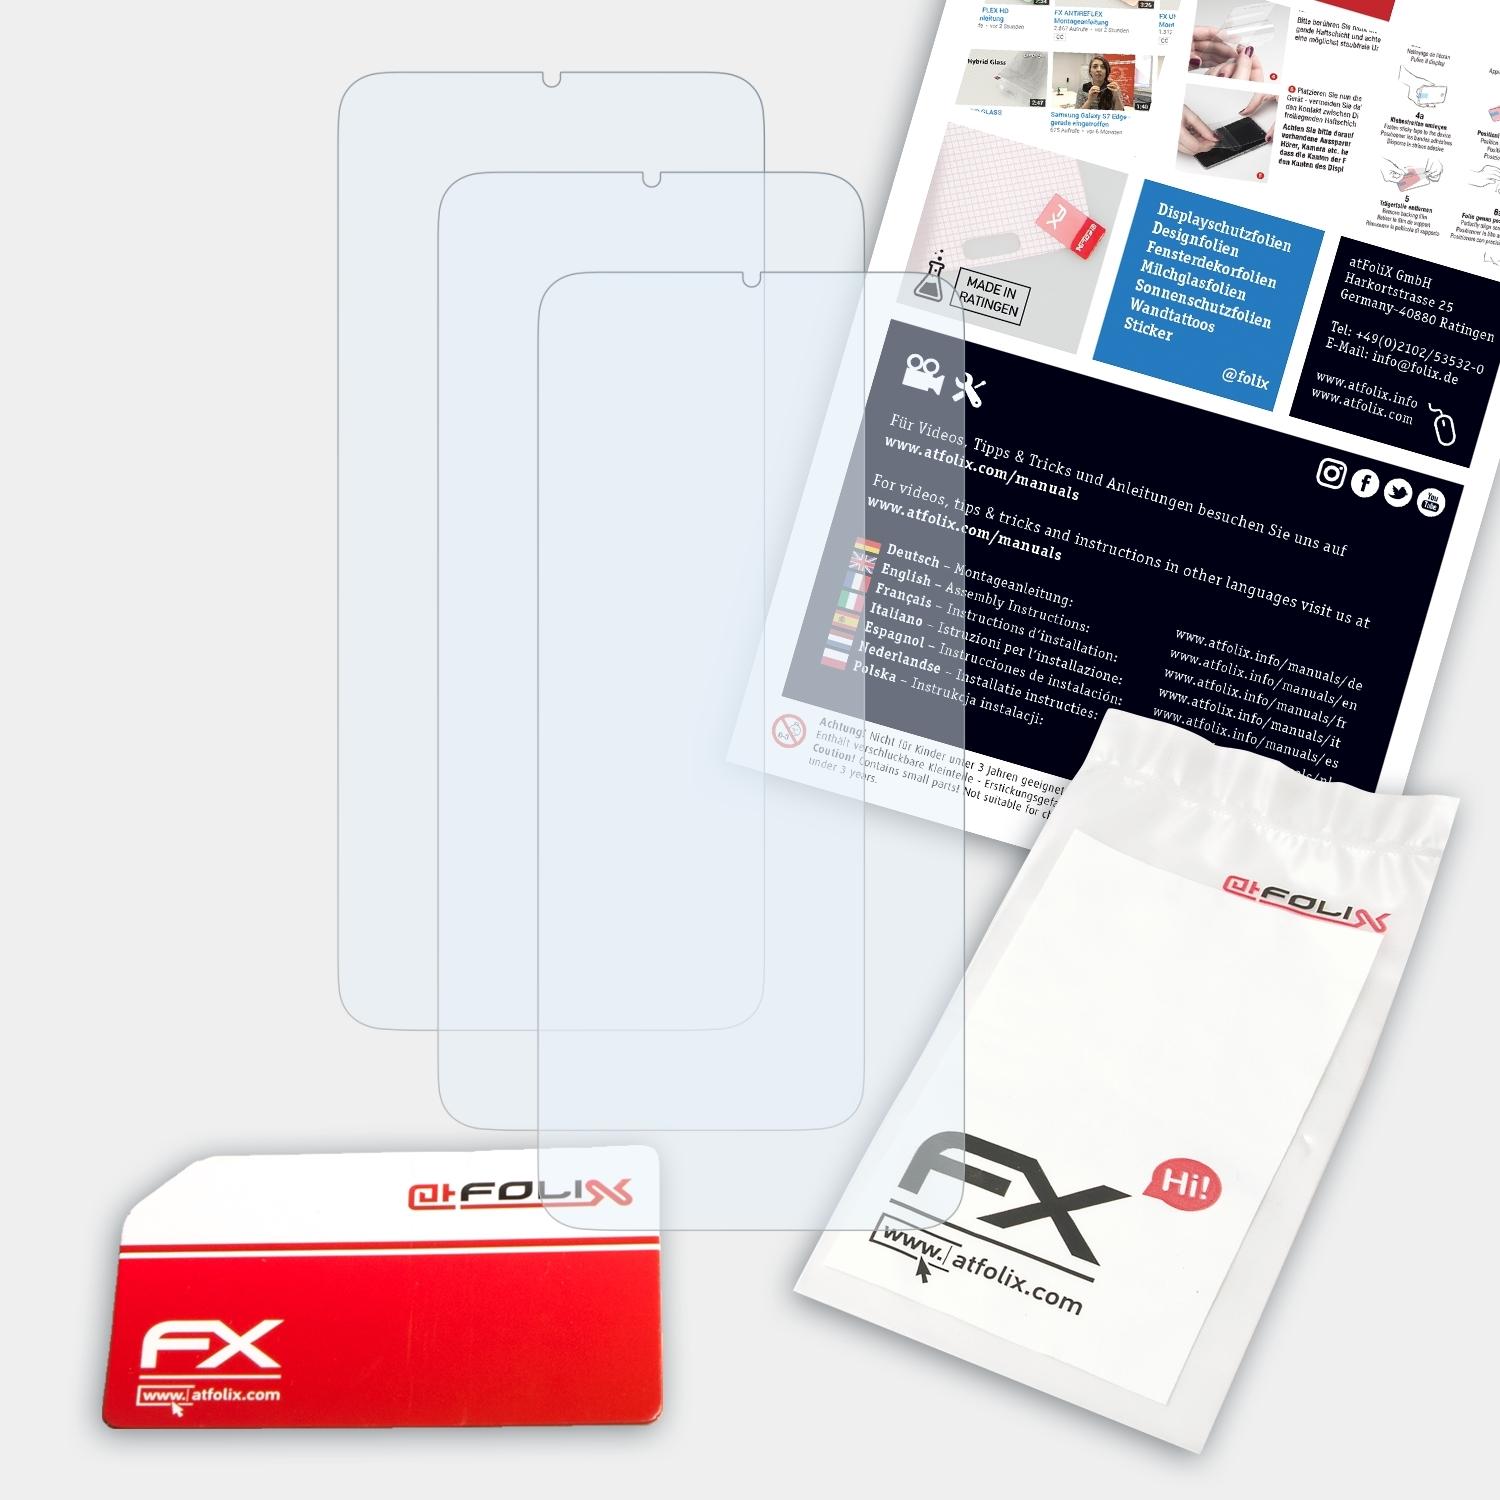 3x ATFOLIX 9T) Redmi FX-Clear Xiaomi Displayschutz(für